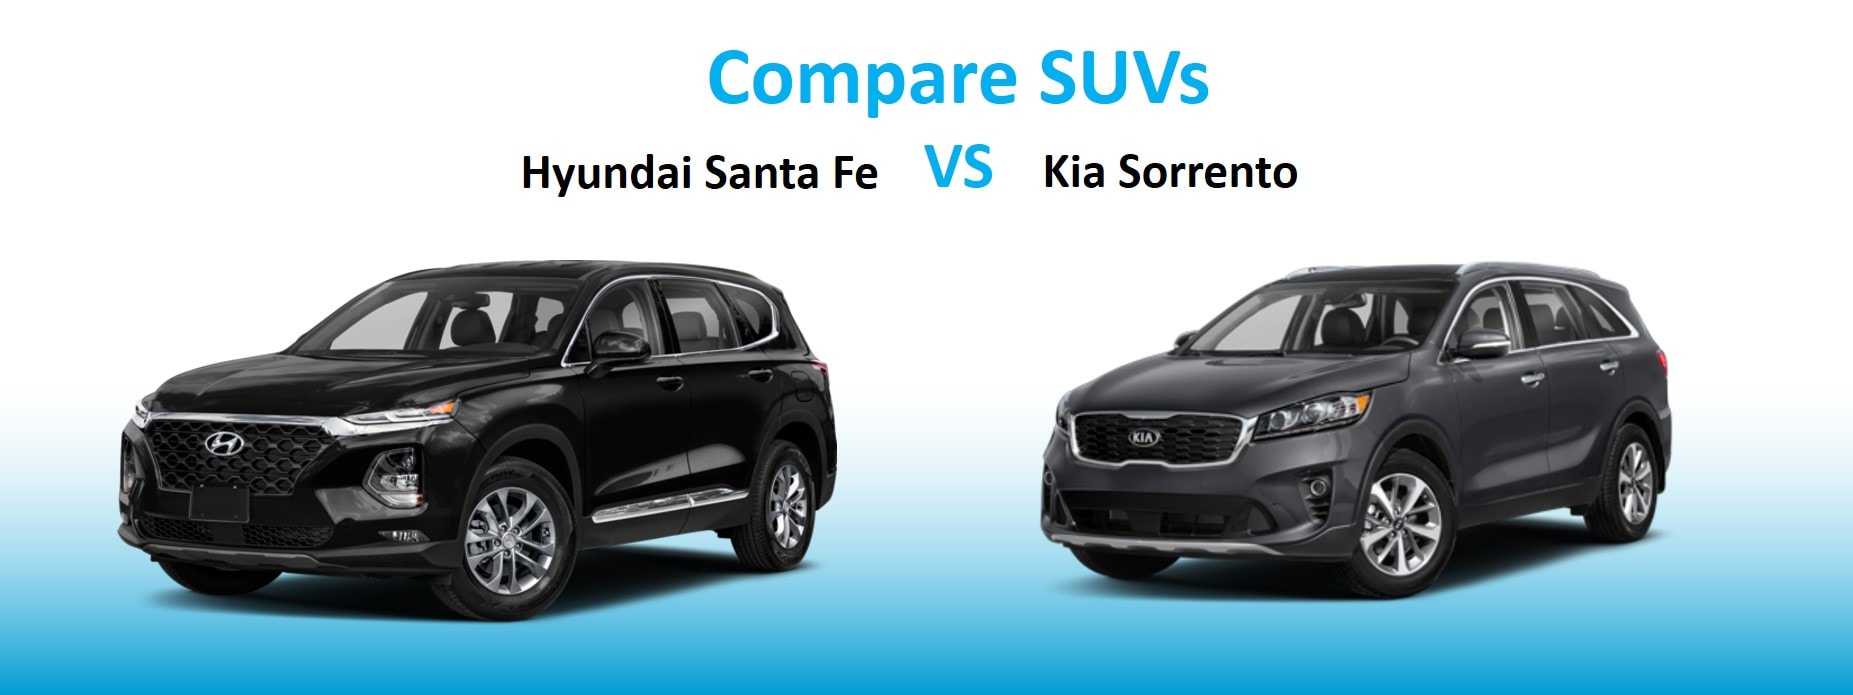 Compare SUVs Hyundai Santa Fe vs. Kia Sorento Hyundai of Chantilly